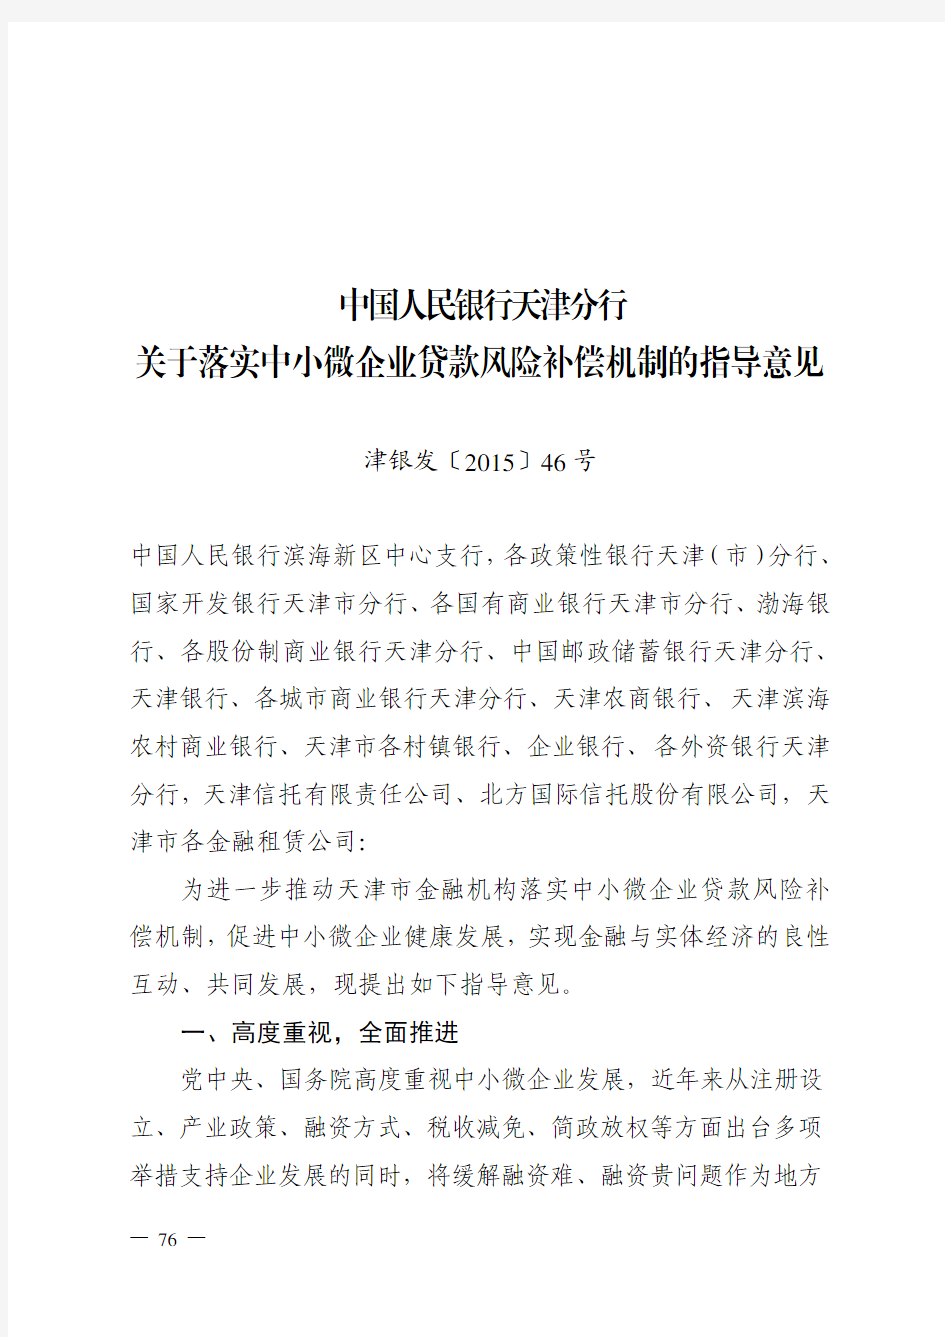 中国人民银行天津分行关于落实中小微企业贷款风险补偿机制的指导意见